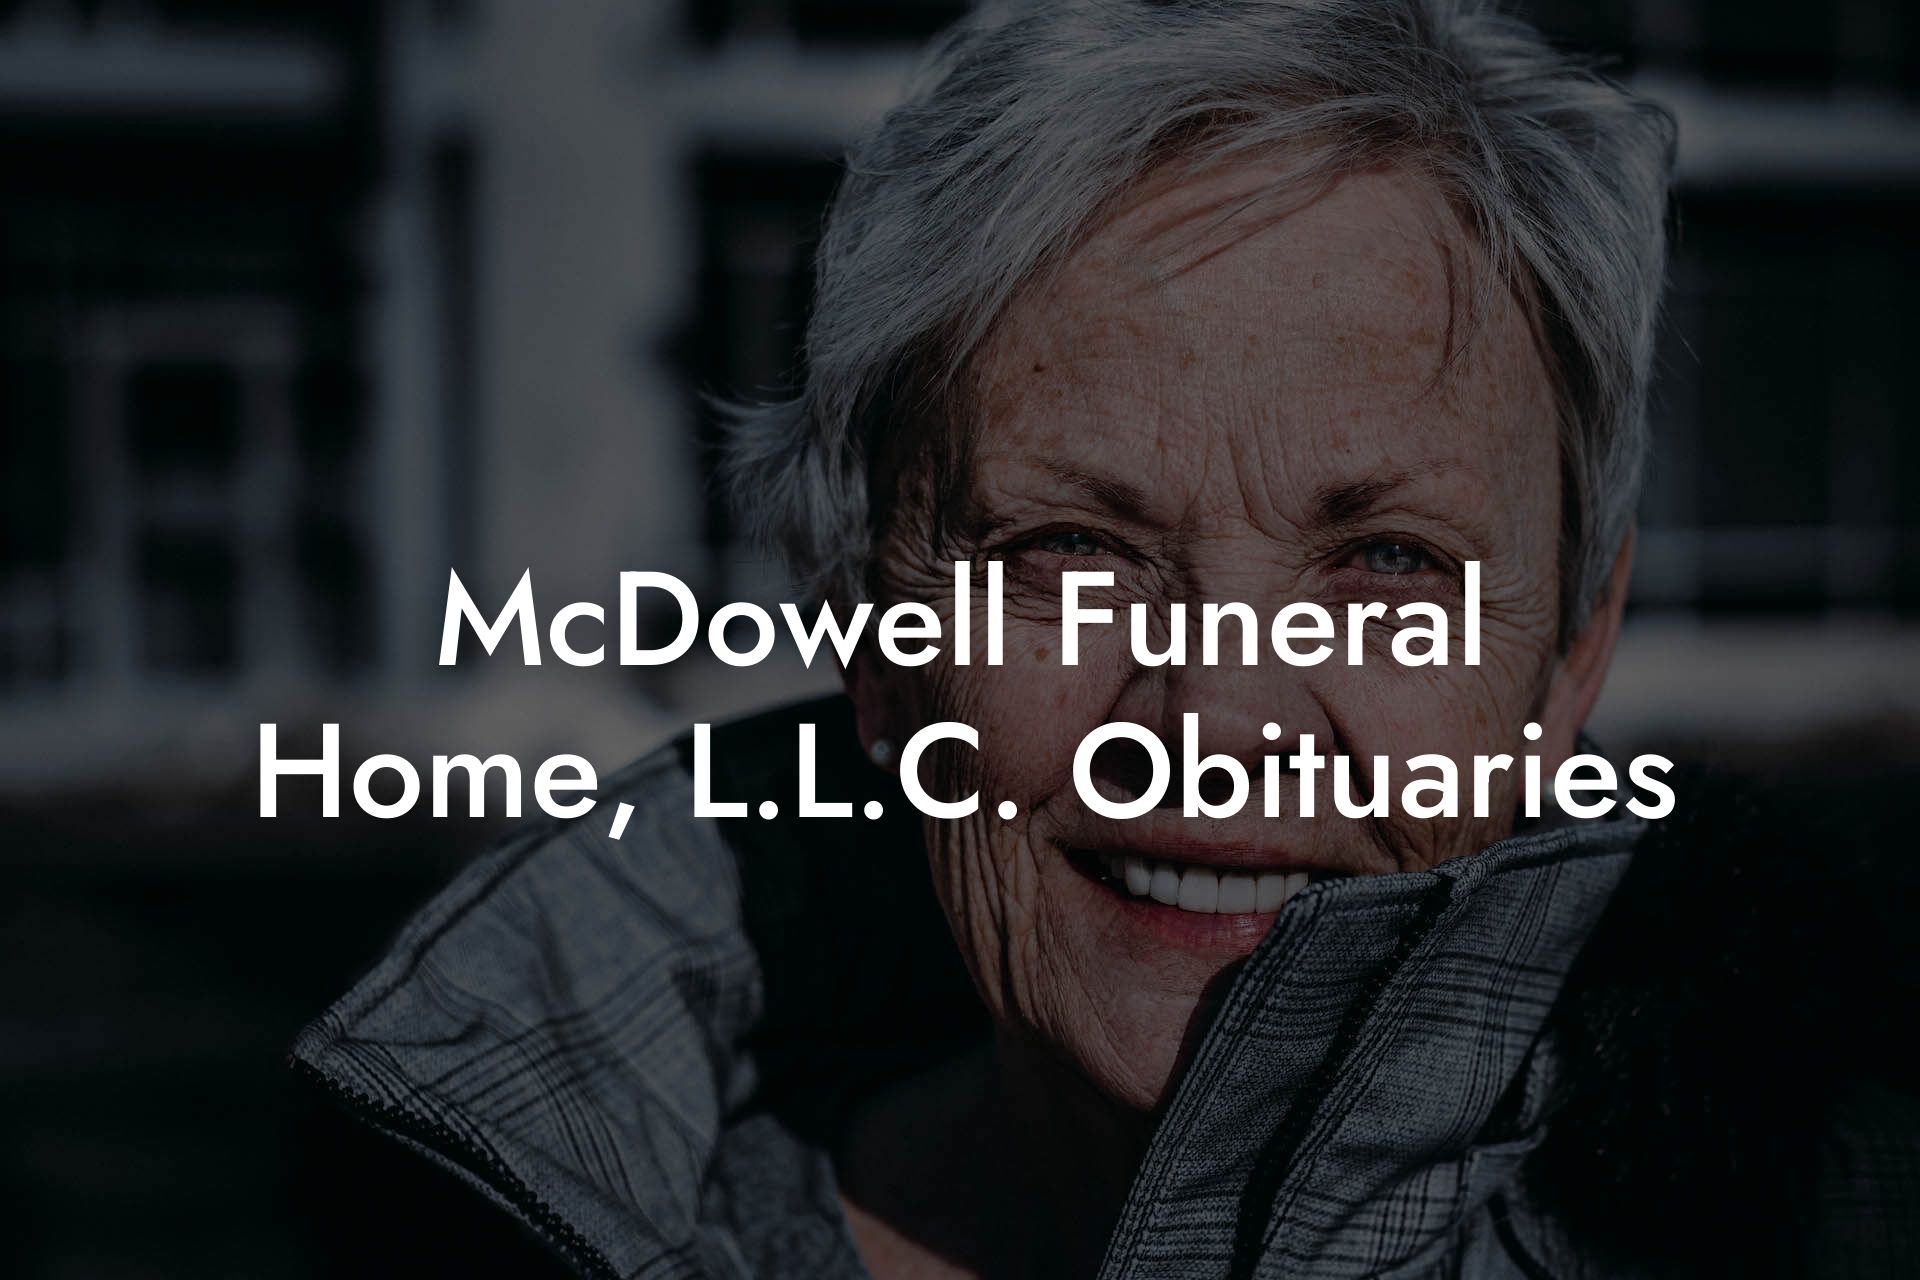 McDowell Funeral Home, L.L.C. Obituaries